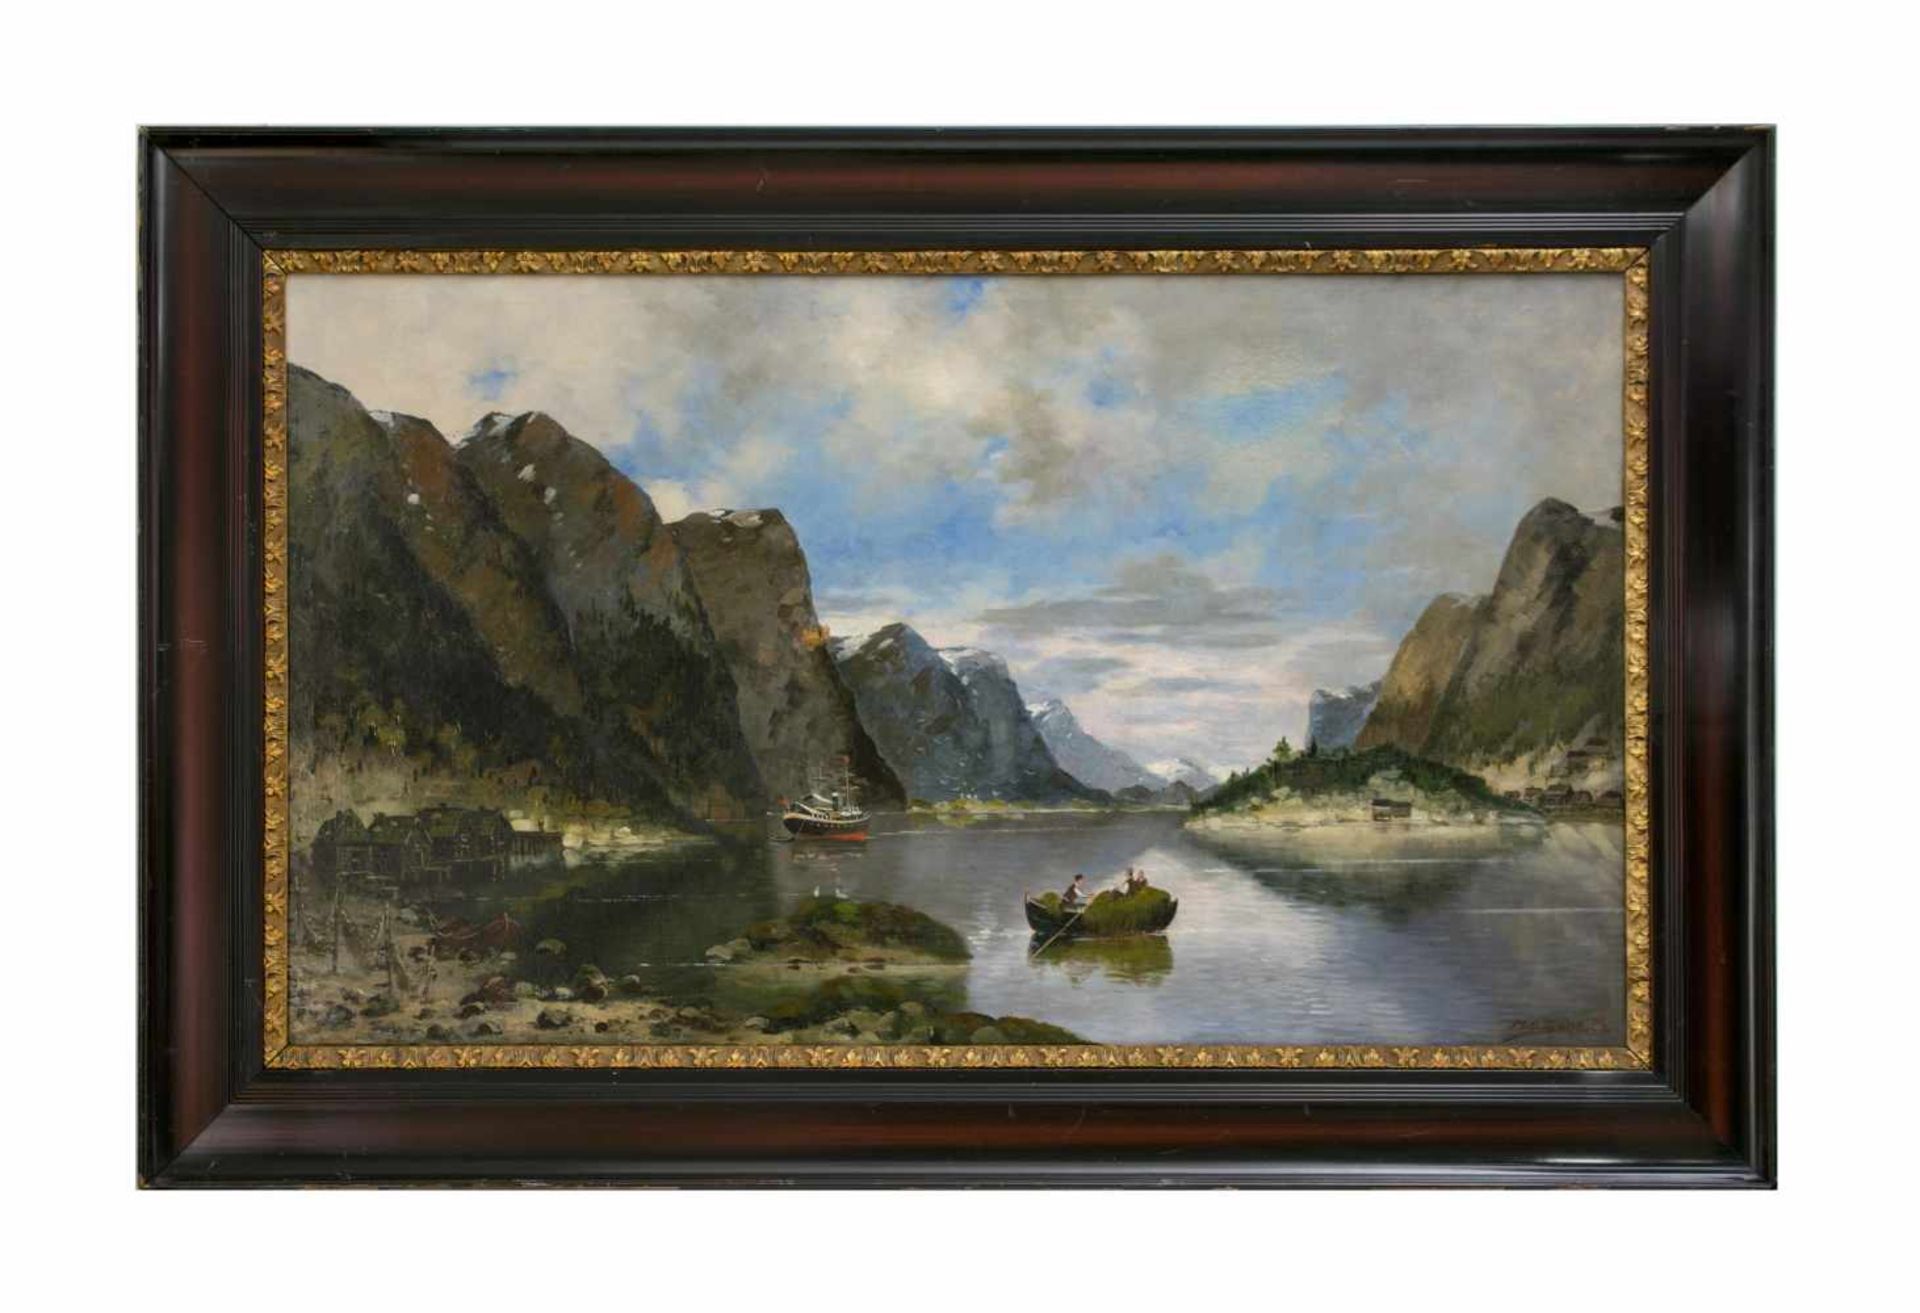 Max Otto Beyer (1863 Berlin - 1902 Düsseldorf) Landschaft in Fjord, Öl auf Leinwand, 69,5 cm x 119,5 - Image 2 of 5